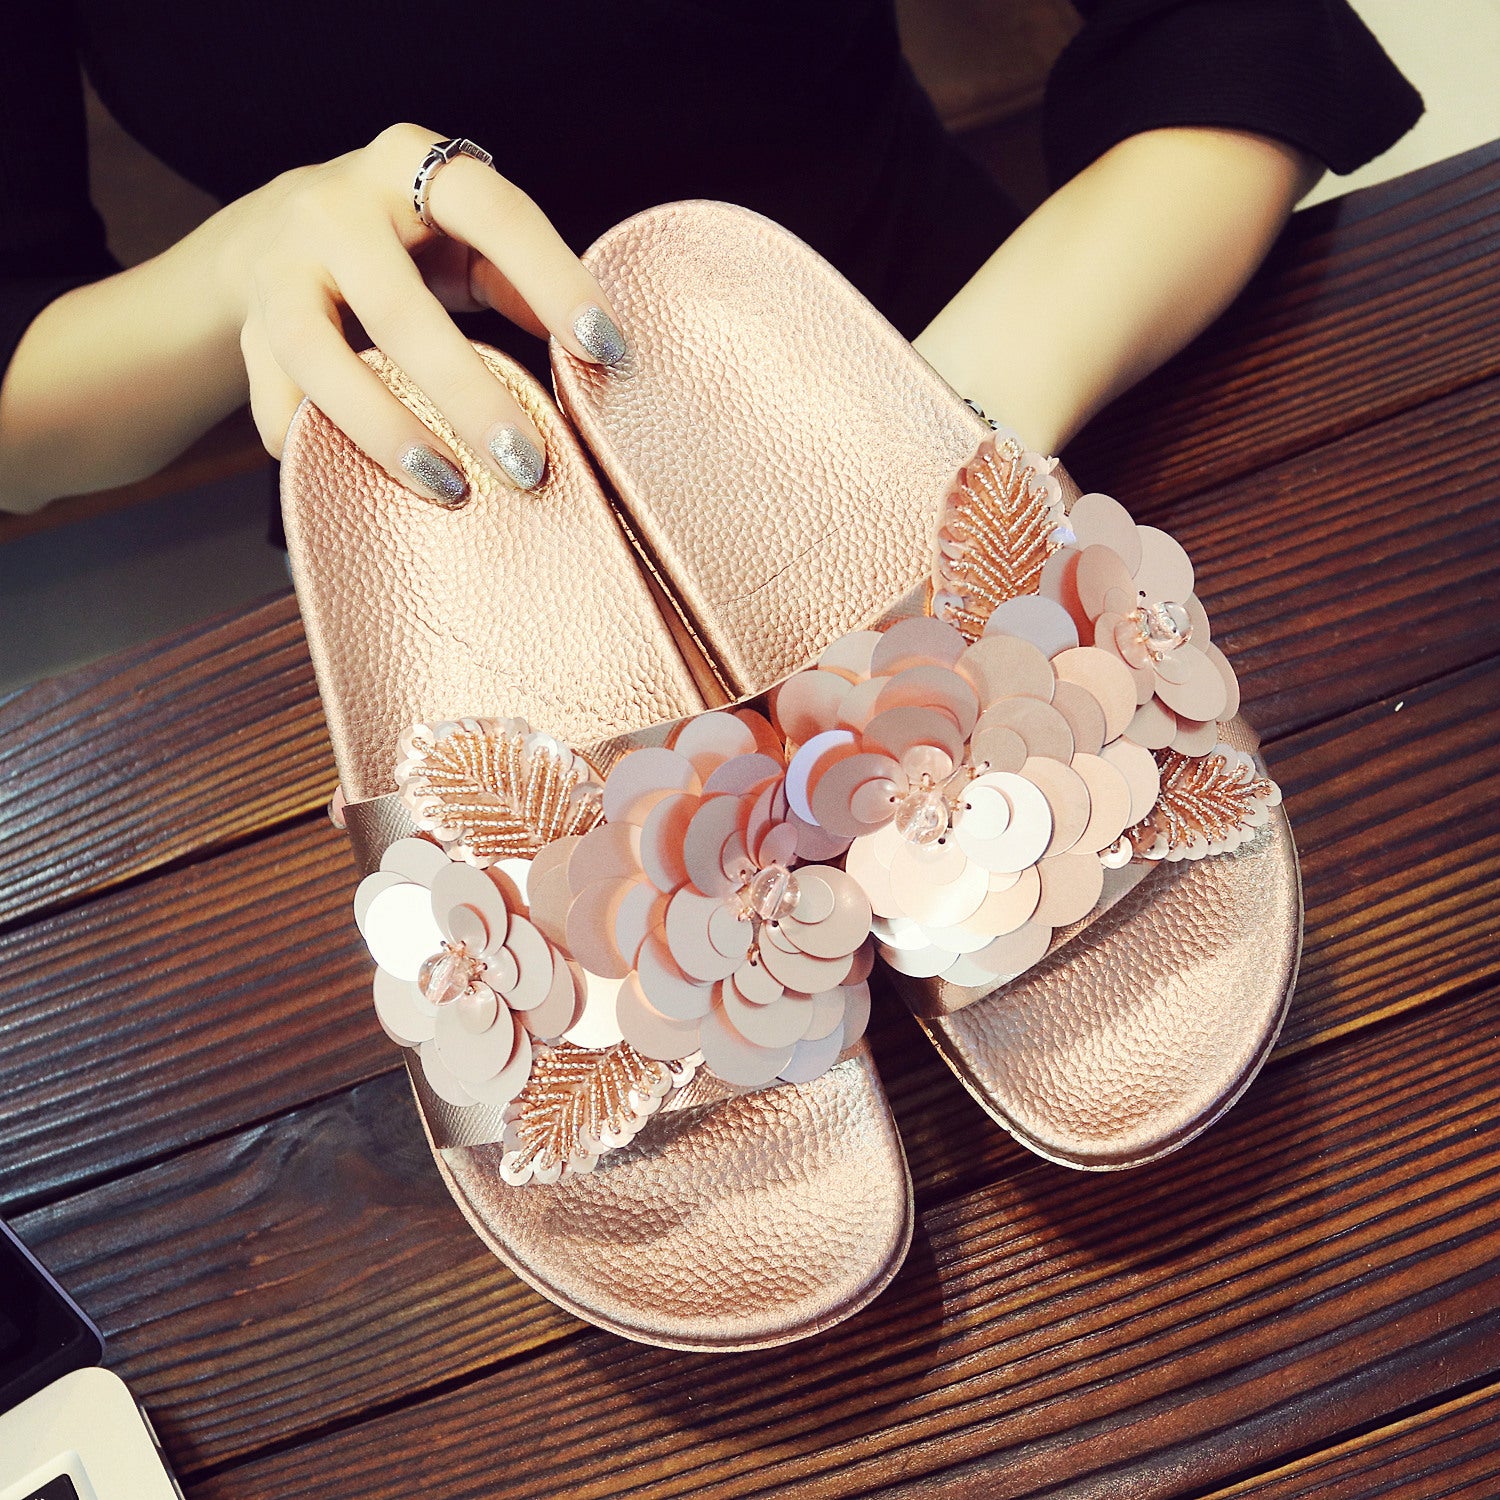 Papuci/?lapi moderni pentru femei, decorati cu paiete ?i flori, din material pvc, sandale cu talpa joasa anti alunecare